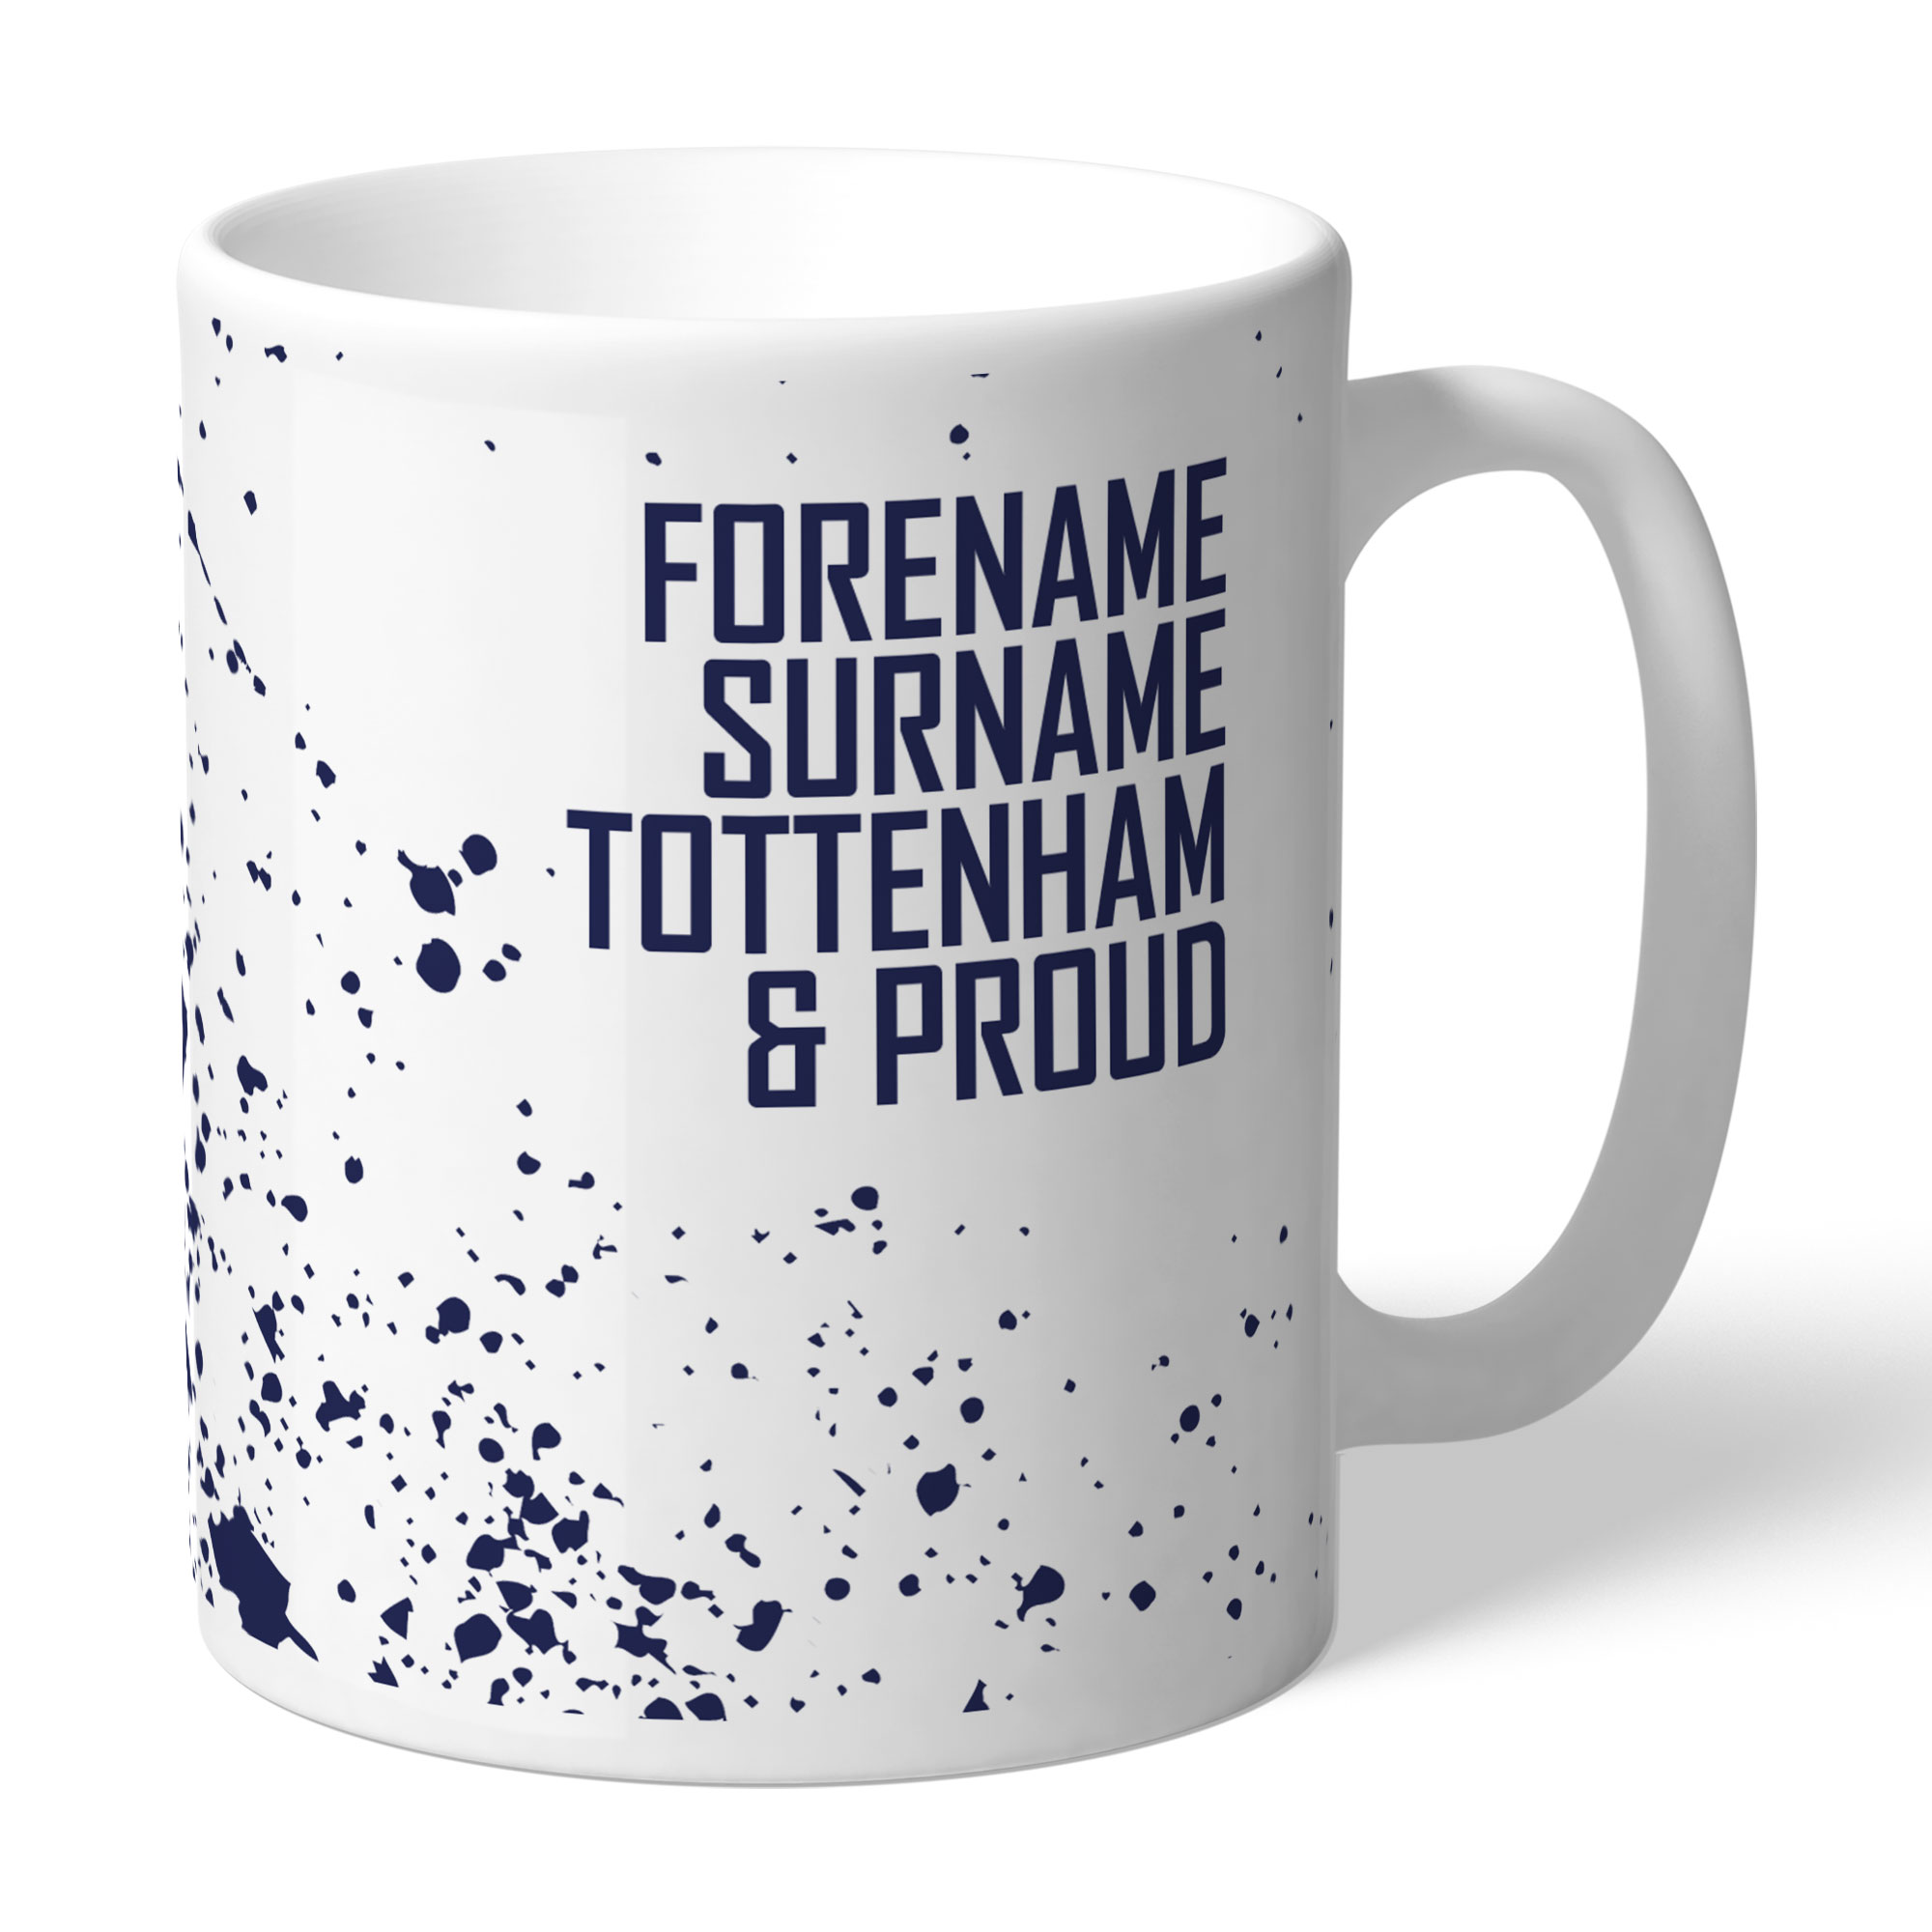 Personalised Tottenham Hotspur FC Proud Mug